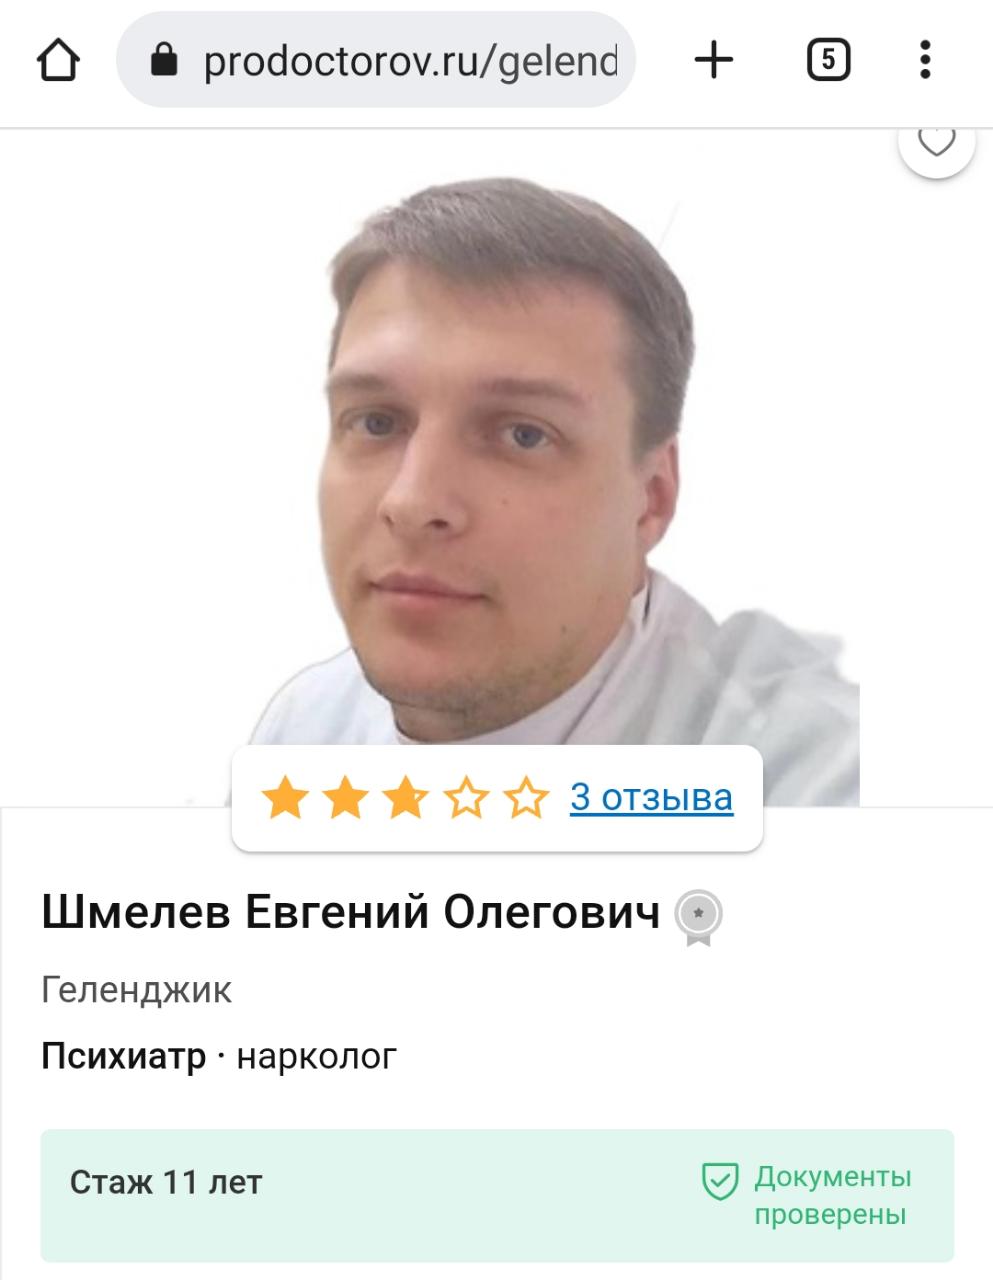 https://www.livekuban.ru/news/obshchestvo/18-mer-gelendzhika-bogodistov-vyrugalsya-matom-v-pryamom-efire